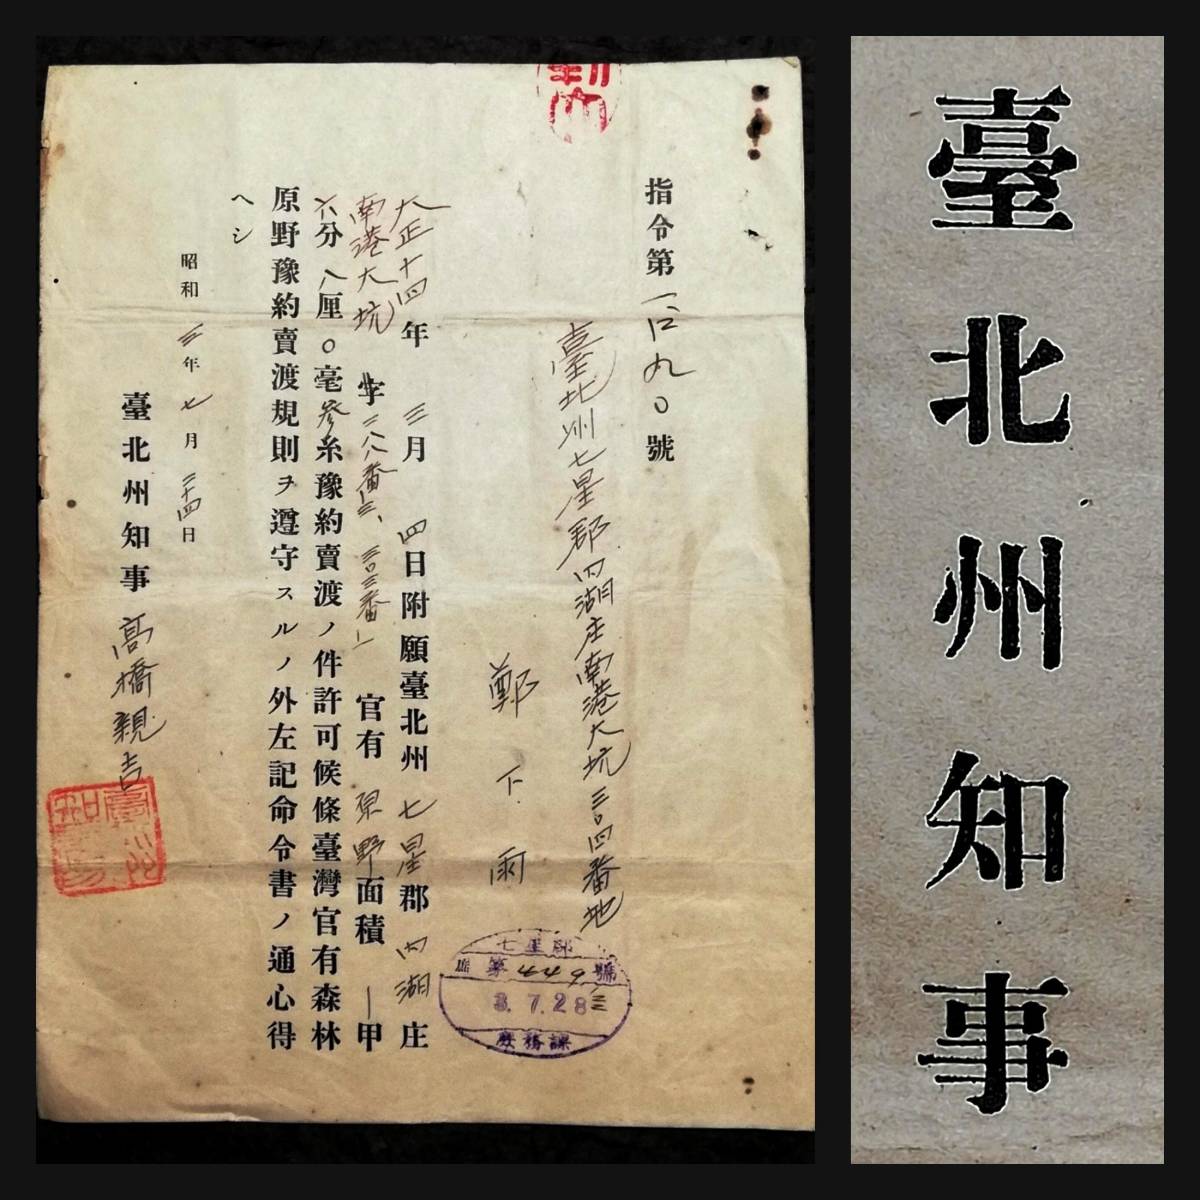 1928年 台湾 台北州知事 古文書 総督府 検索:支那軍 中華民国 軍閥 